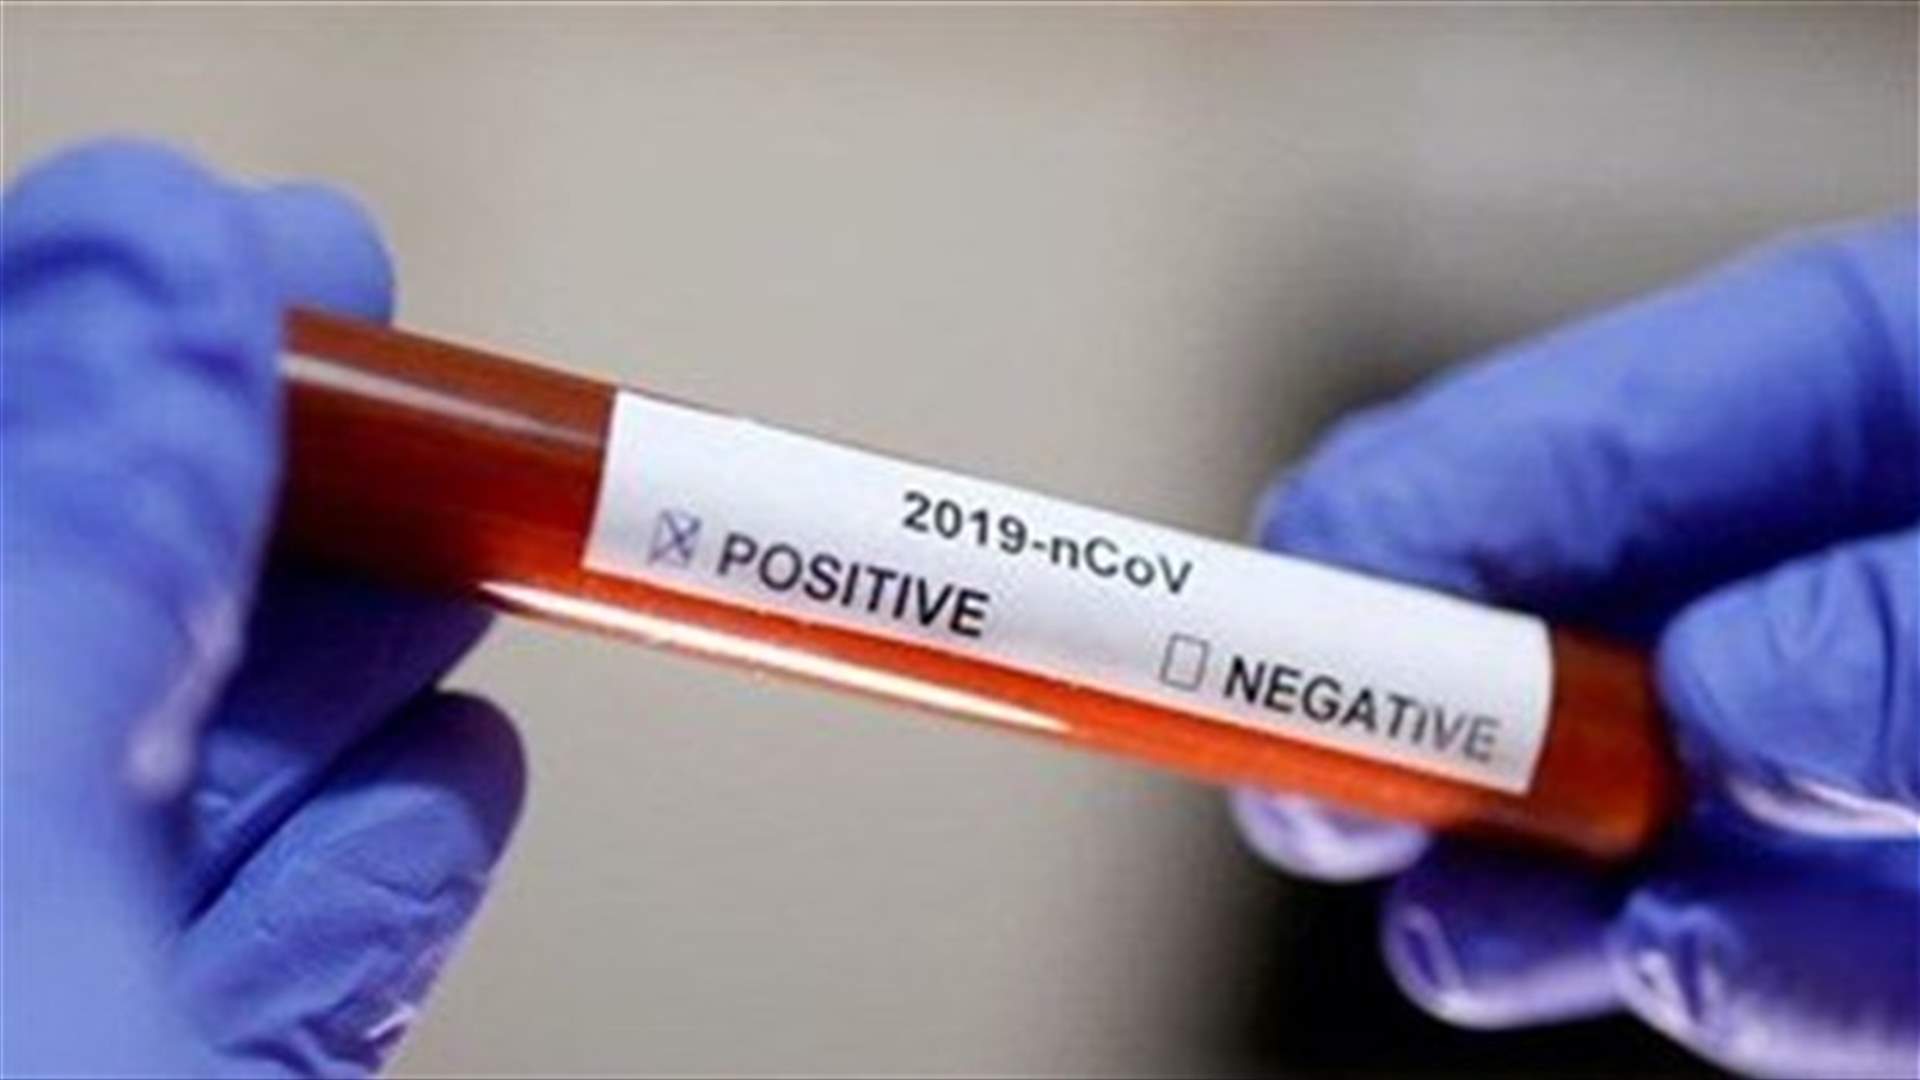 Ministry of Health: Only 11 new Coronavirus cases registered in Lebanon